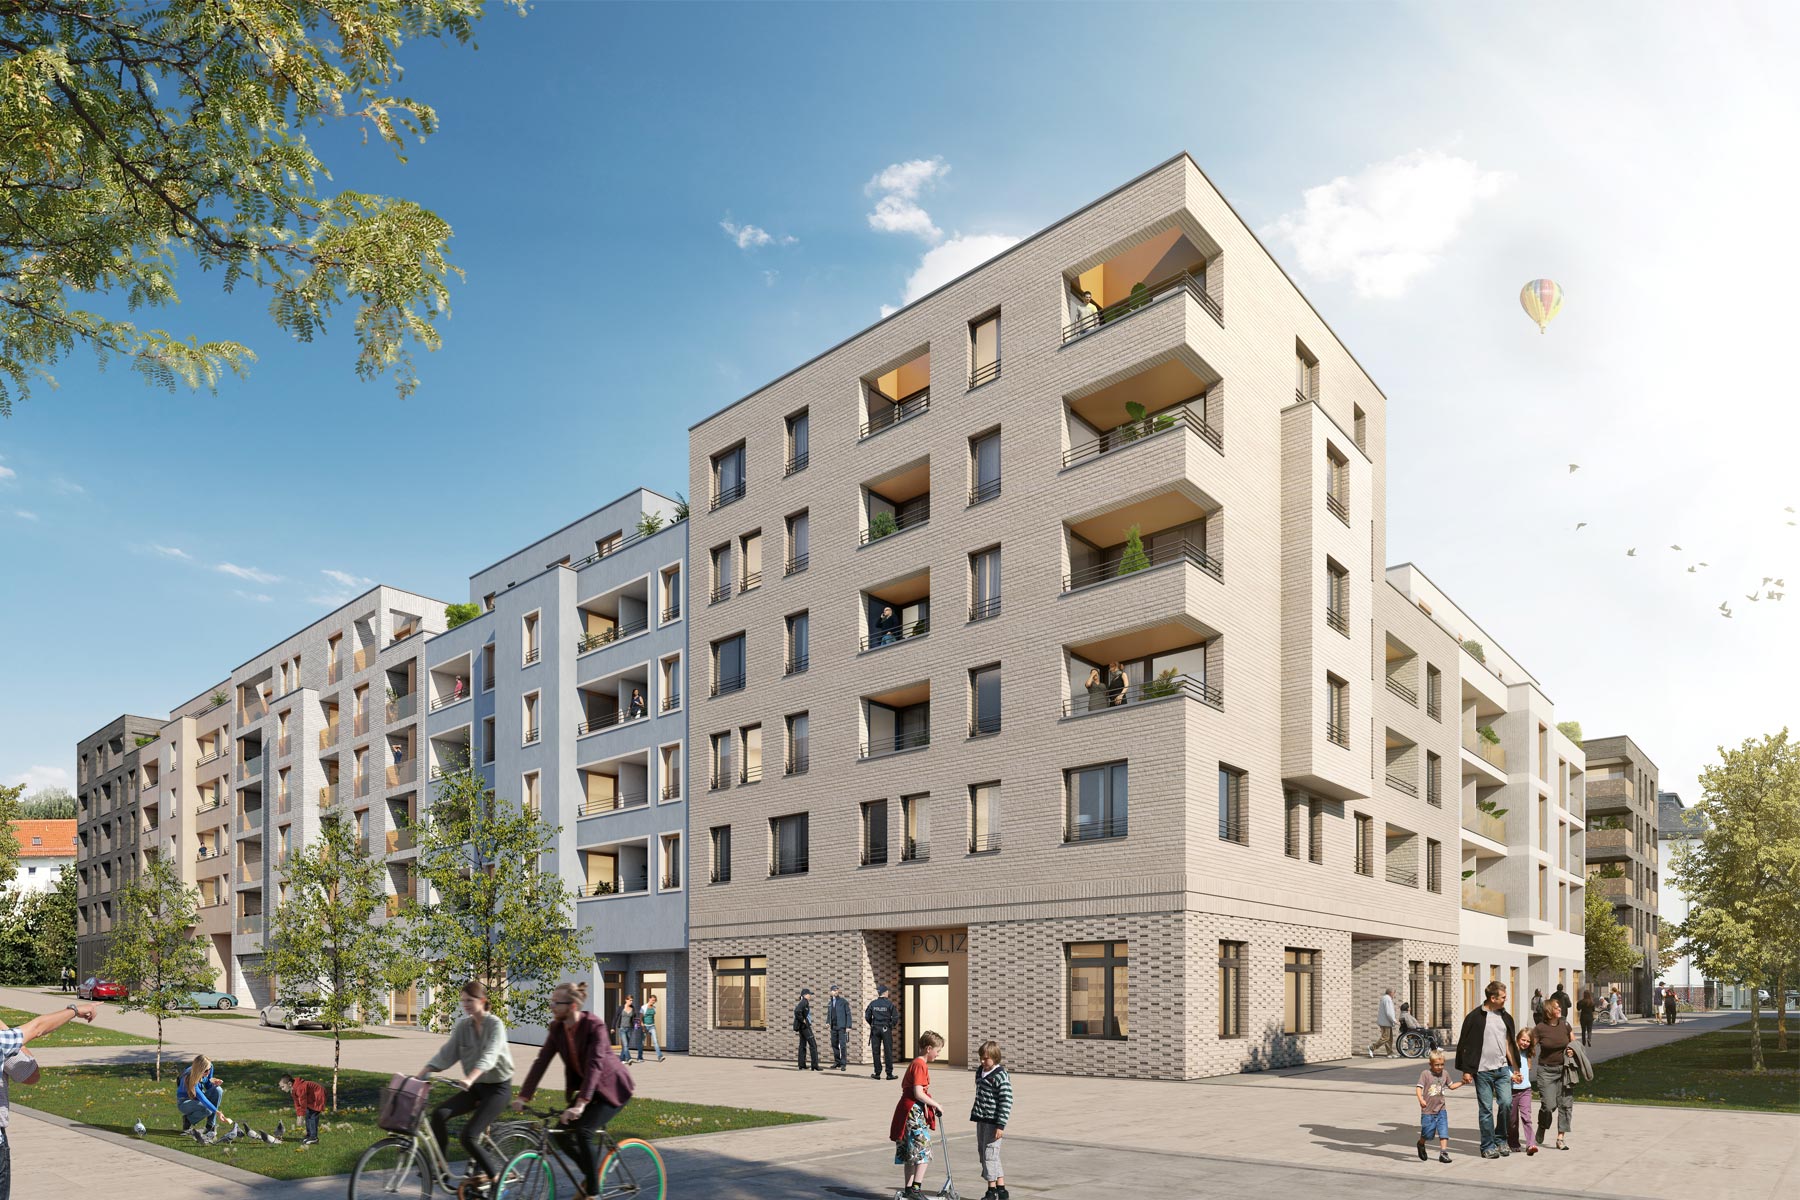 Visualisierung des Weinberg Carré im Stadtteil "Am Weinberg" in Ulm: Blockbebauung mit Klimker-Fassade.